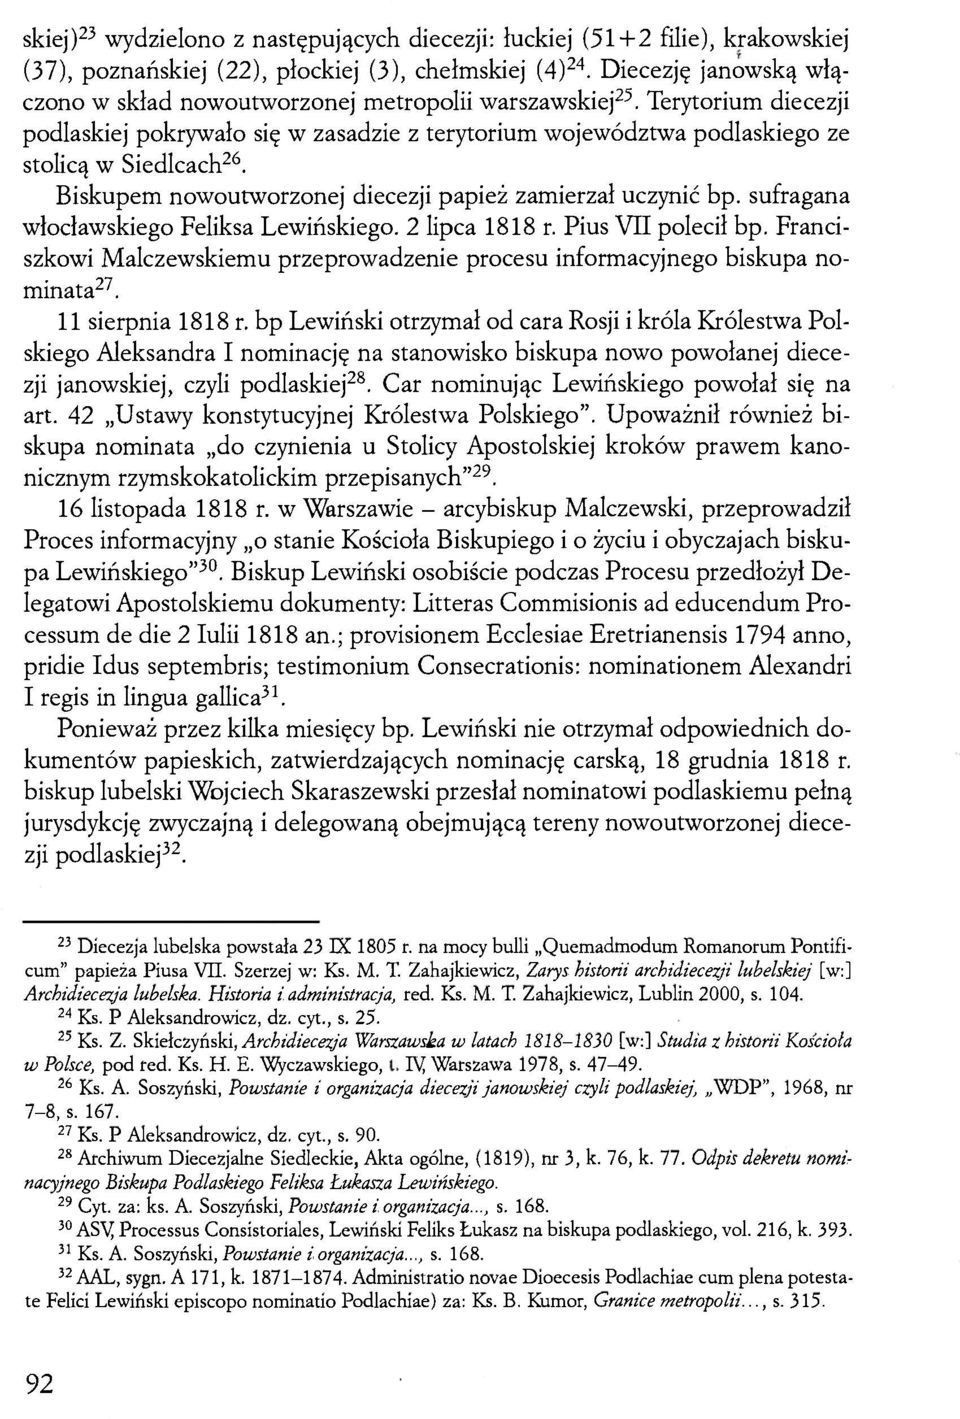 Biskupem nowoutworzonej diecezji papież zamierzał uczynić bp. sufragana włocławskiego Feliksa Lewińskiego. 2 lipca 1818 r. Pius VII polecił bp.